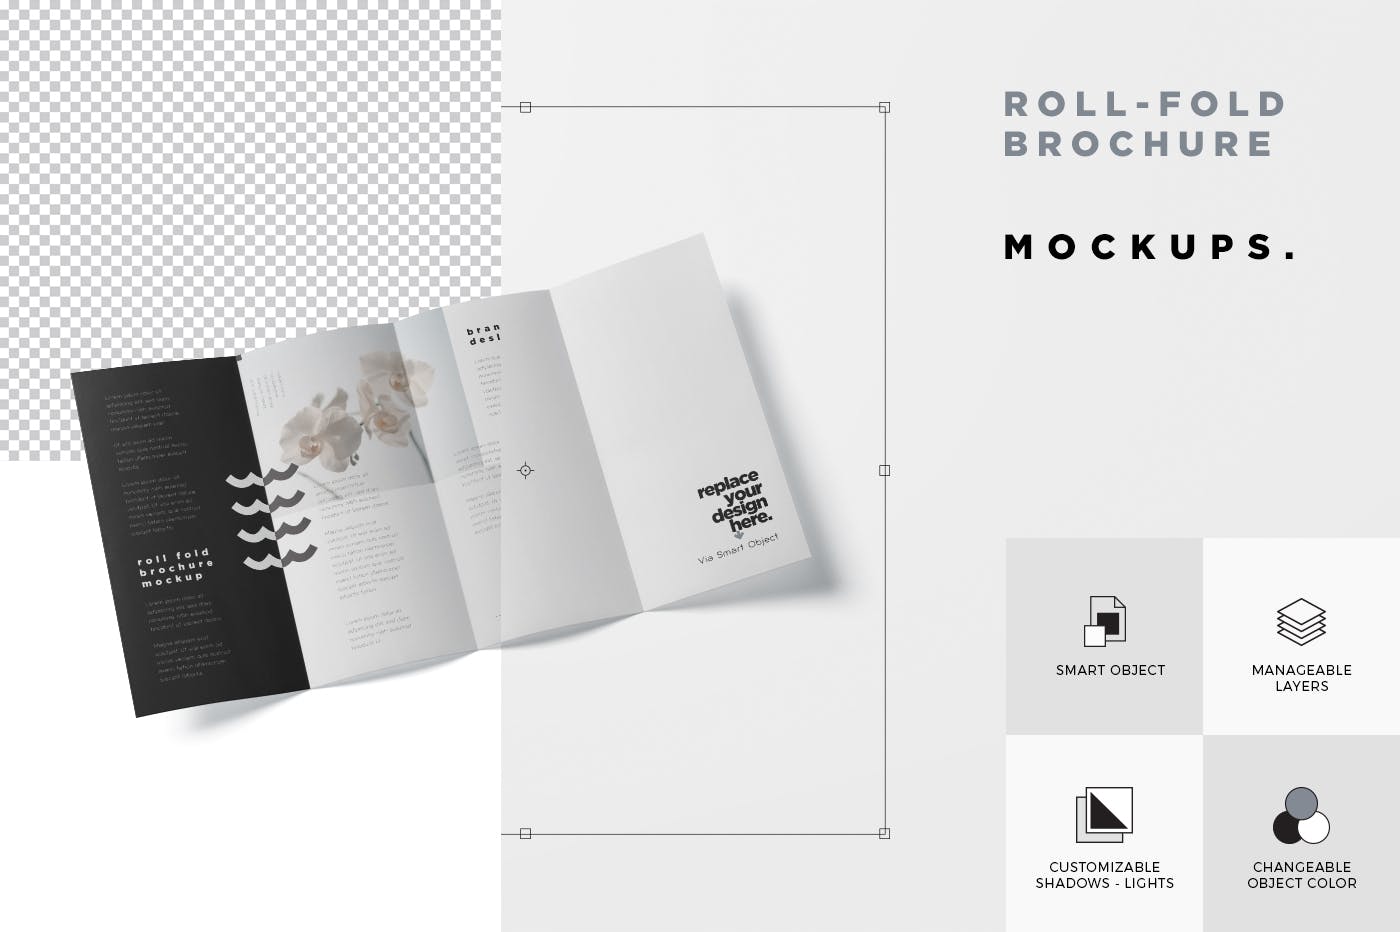 折叠设计风格企业传单/宣传册设计样机16设计网精选 Roll-Fold Brochure Mockup – DL DIN Lang Size插图(6)